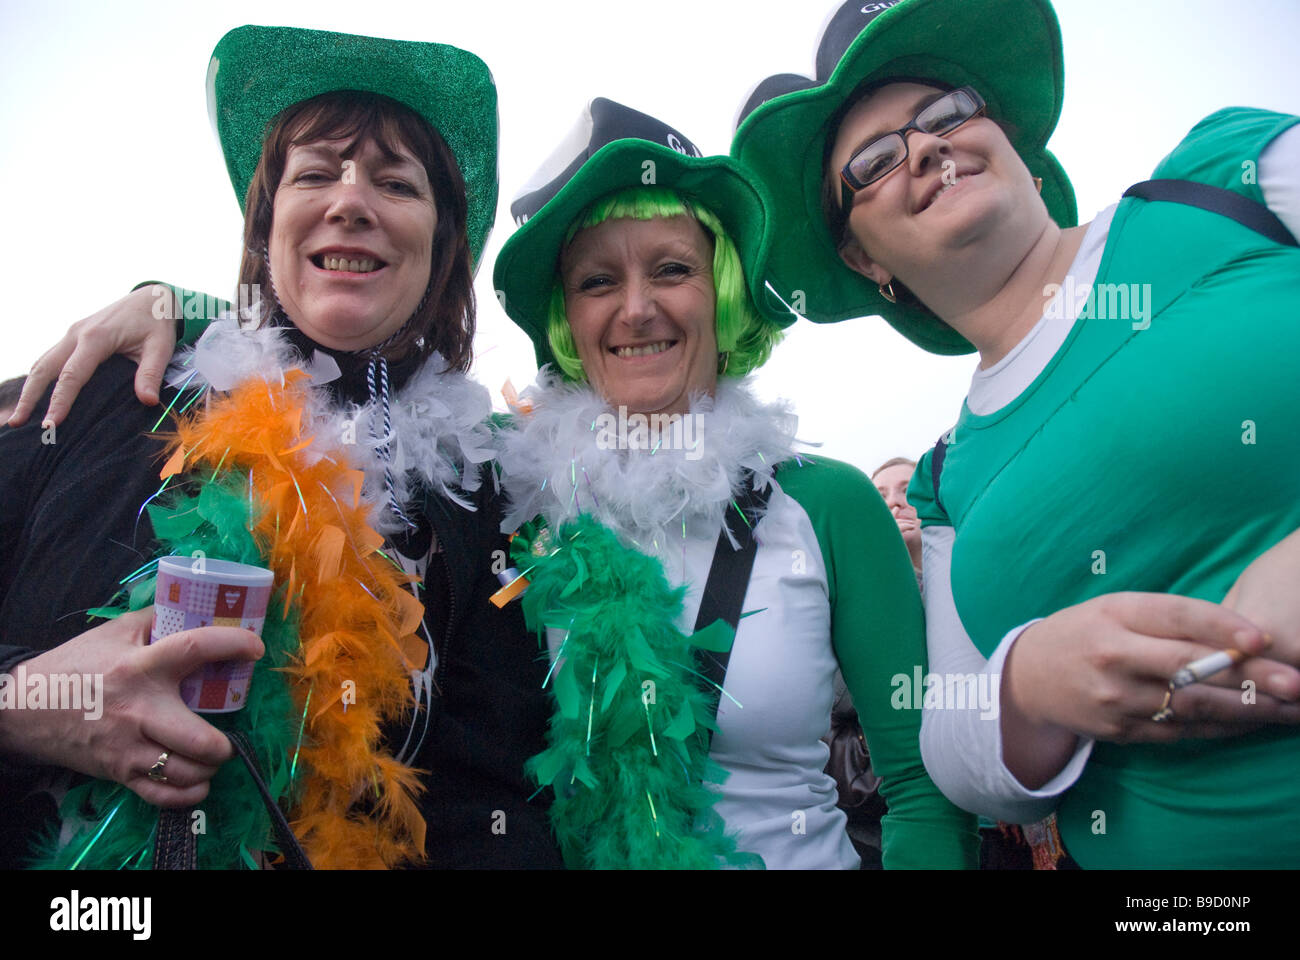 Frauen feiern am St. Patricks Day Feierlichkeiten in Trafalgar Square Stockfoto